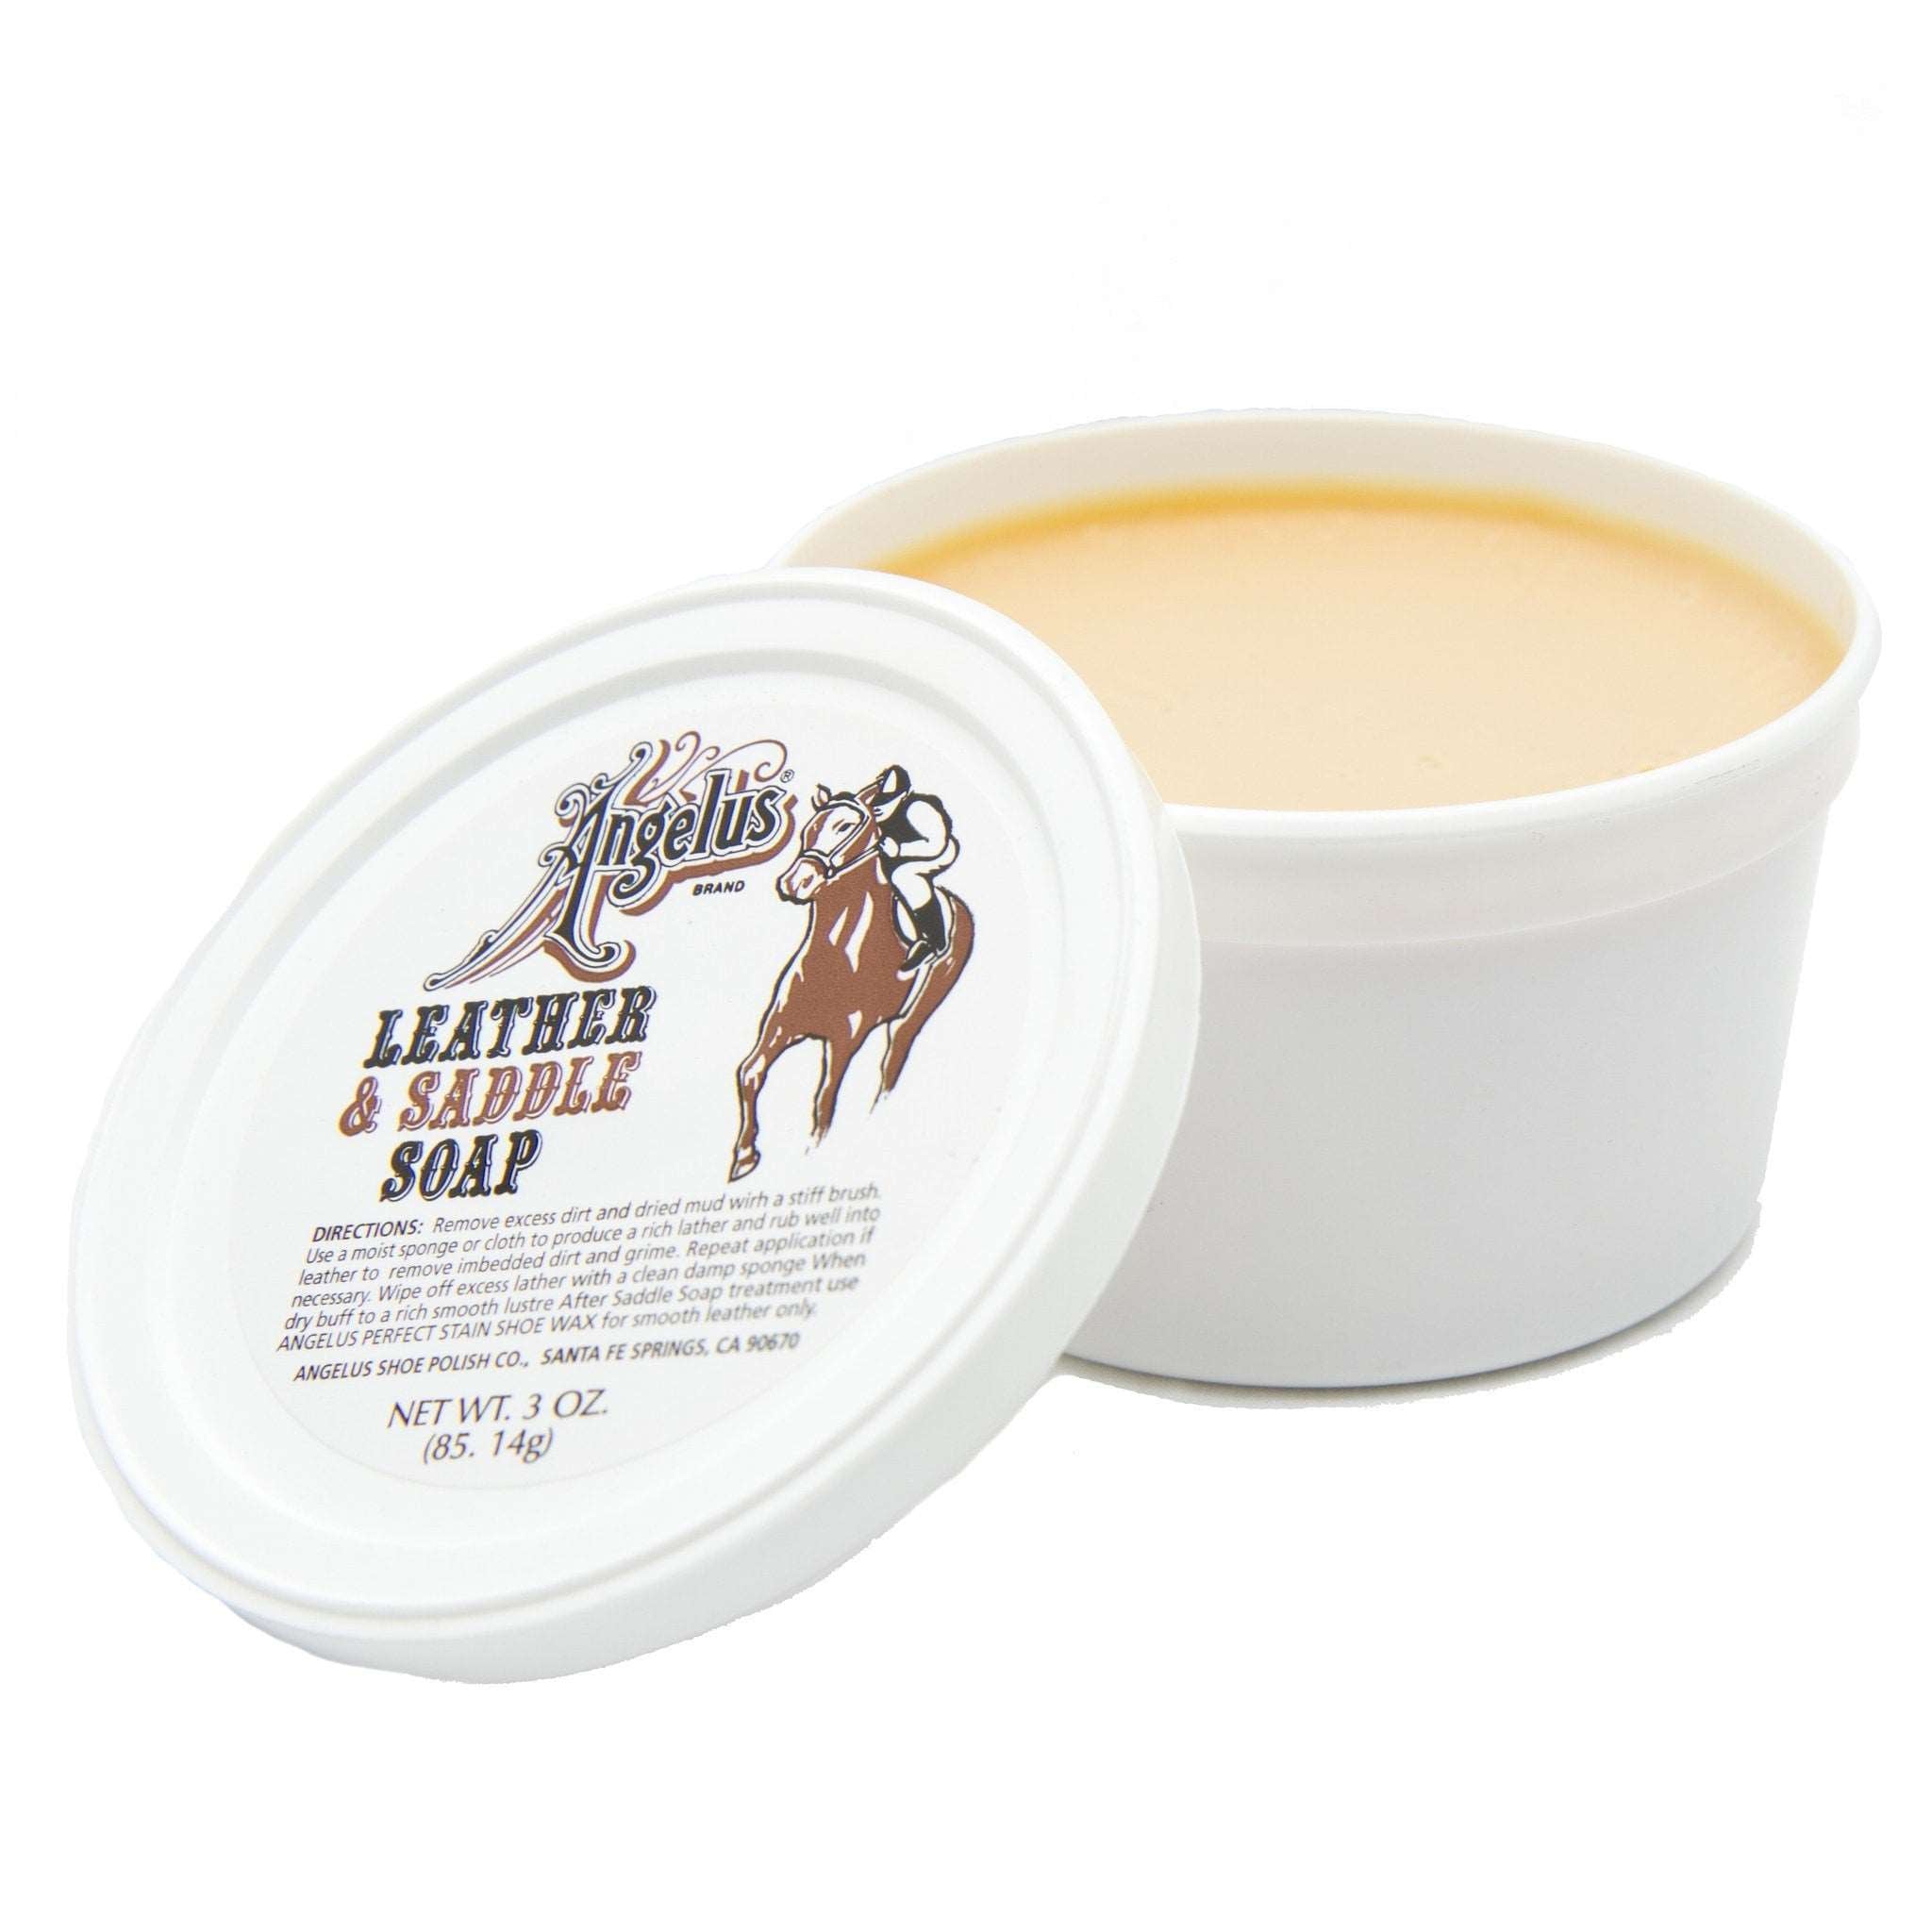 Leather & Saddle Soap - Angelus Direct